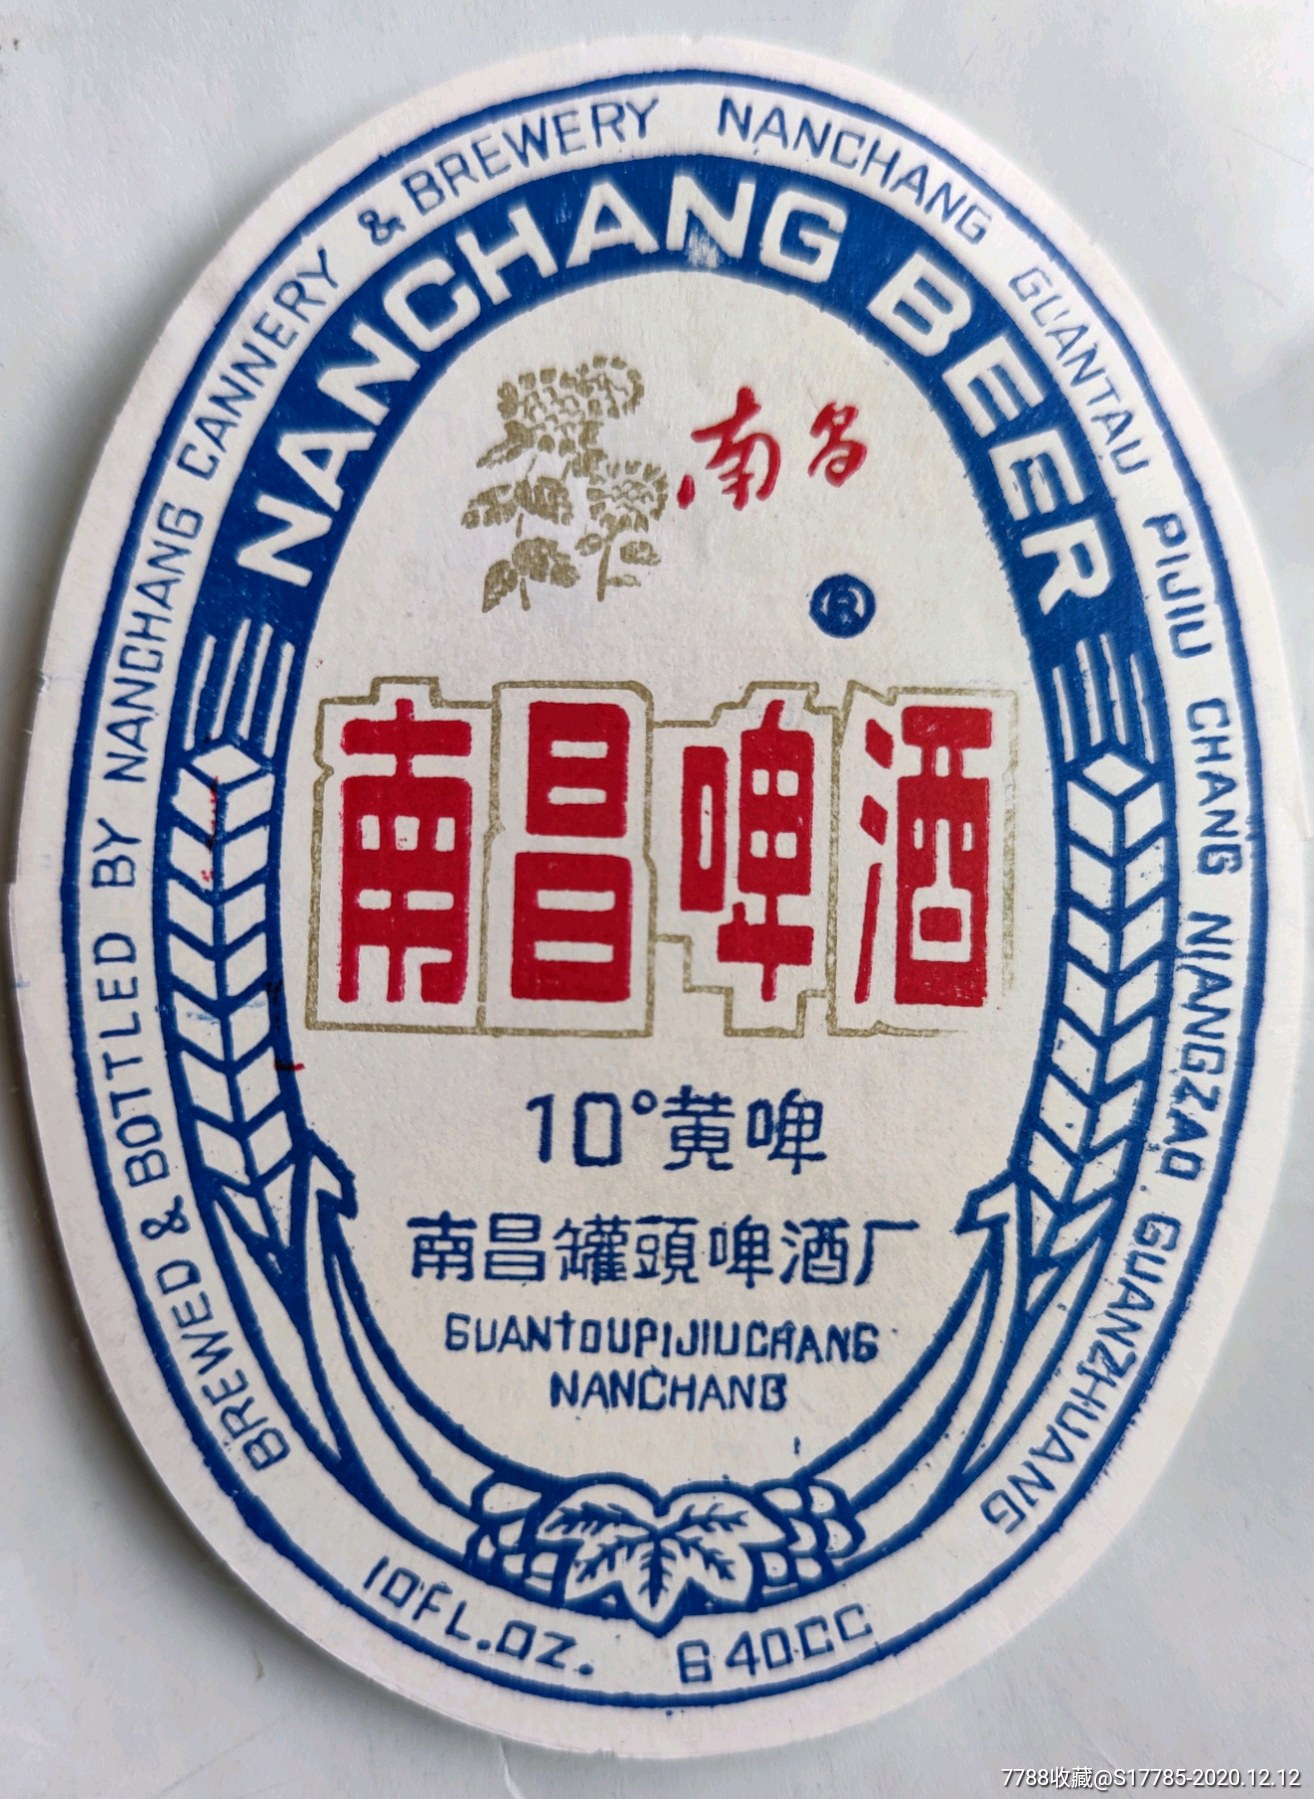 普通南昌啤酒图片